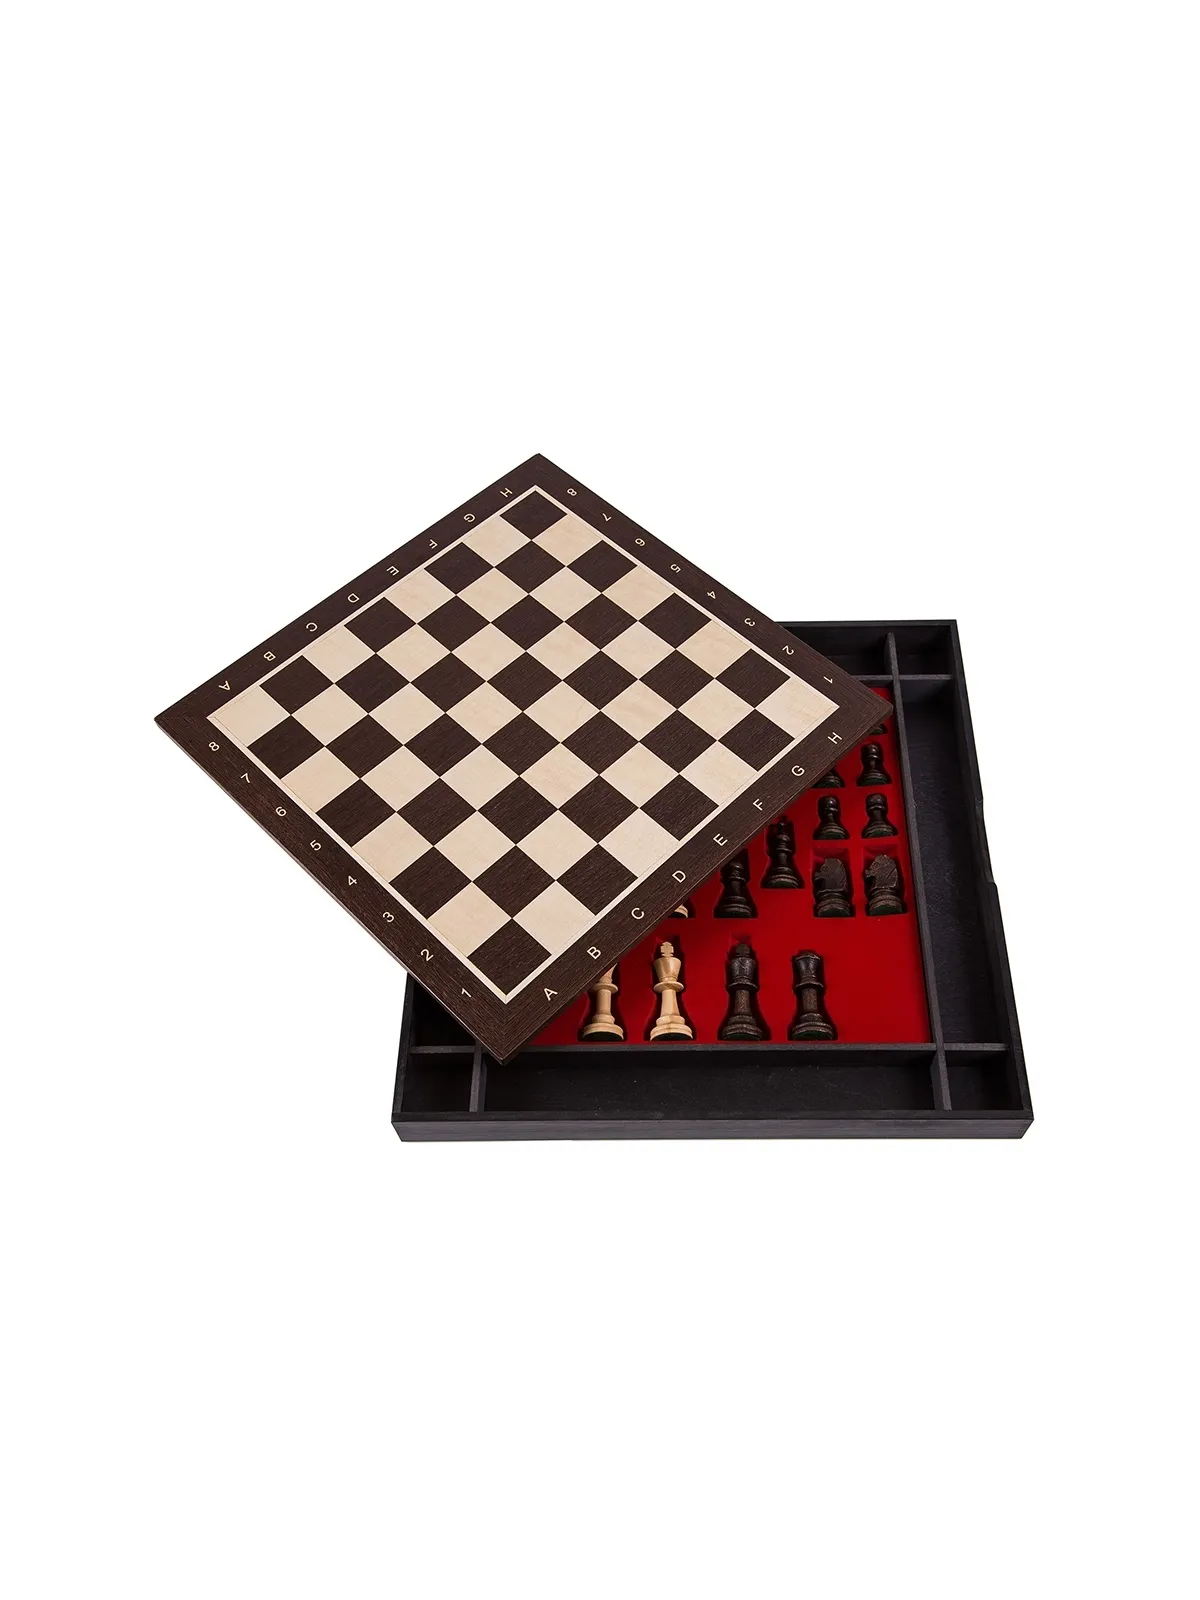 Profi Chess Set No 5 - America